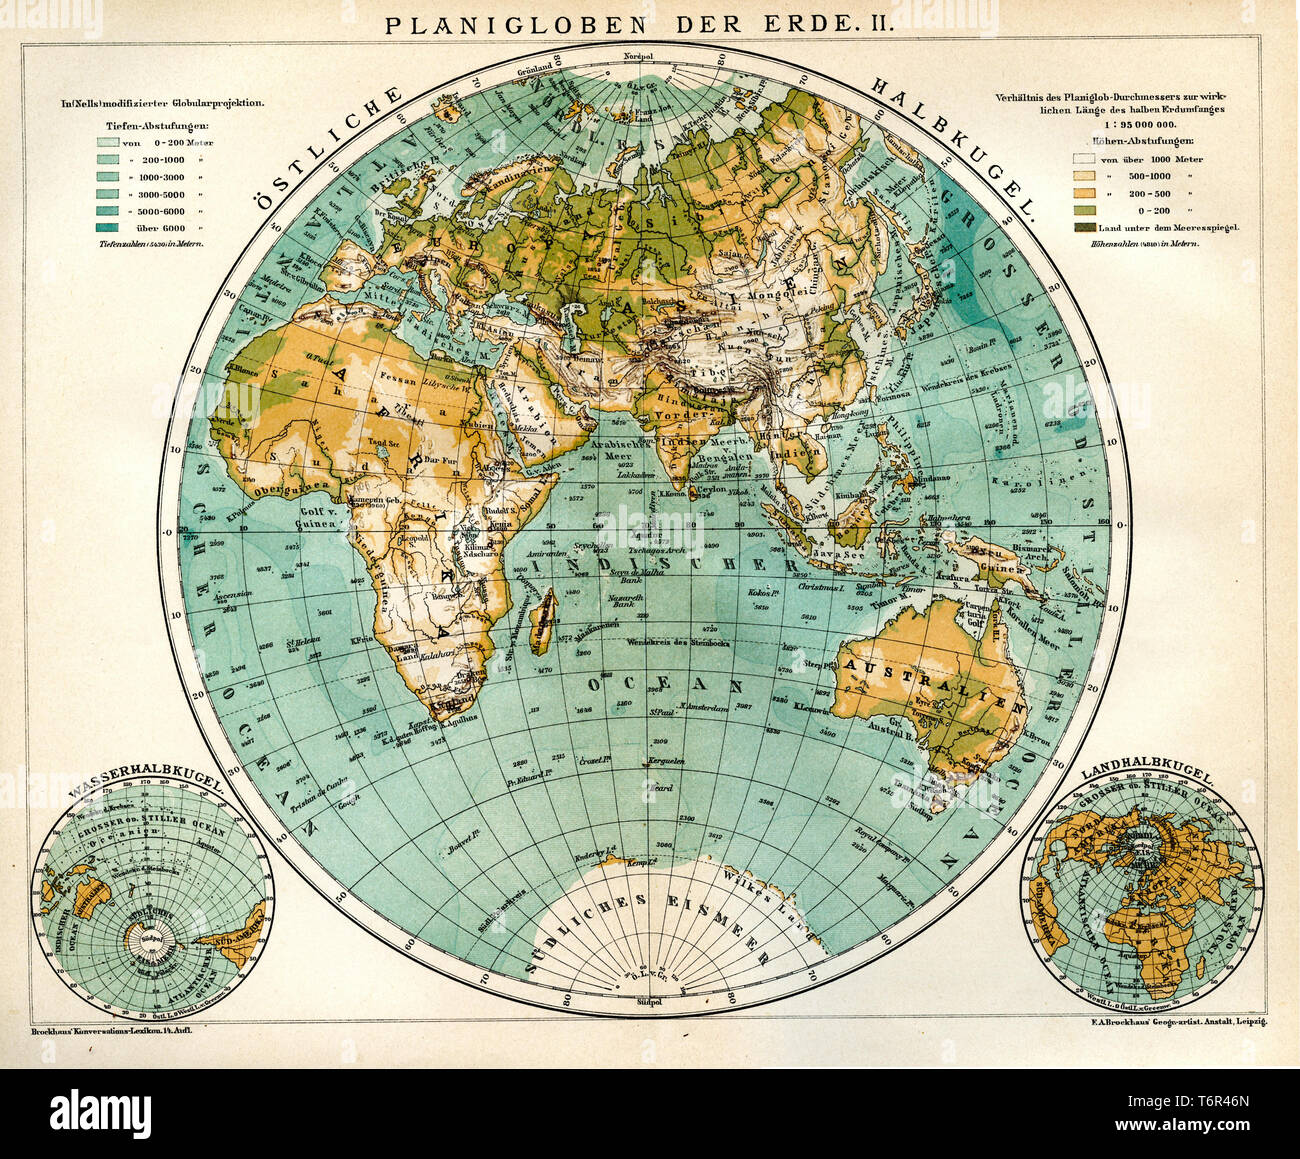 Planiglobe der Erde, 1898 Stockfoto